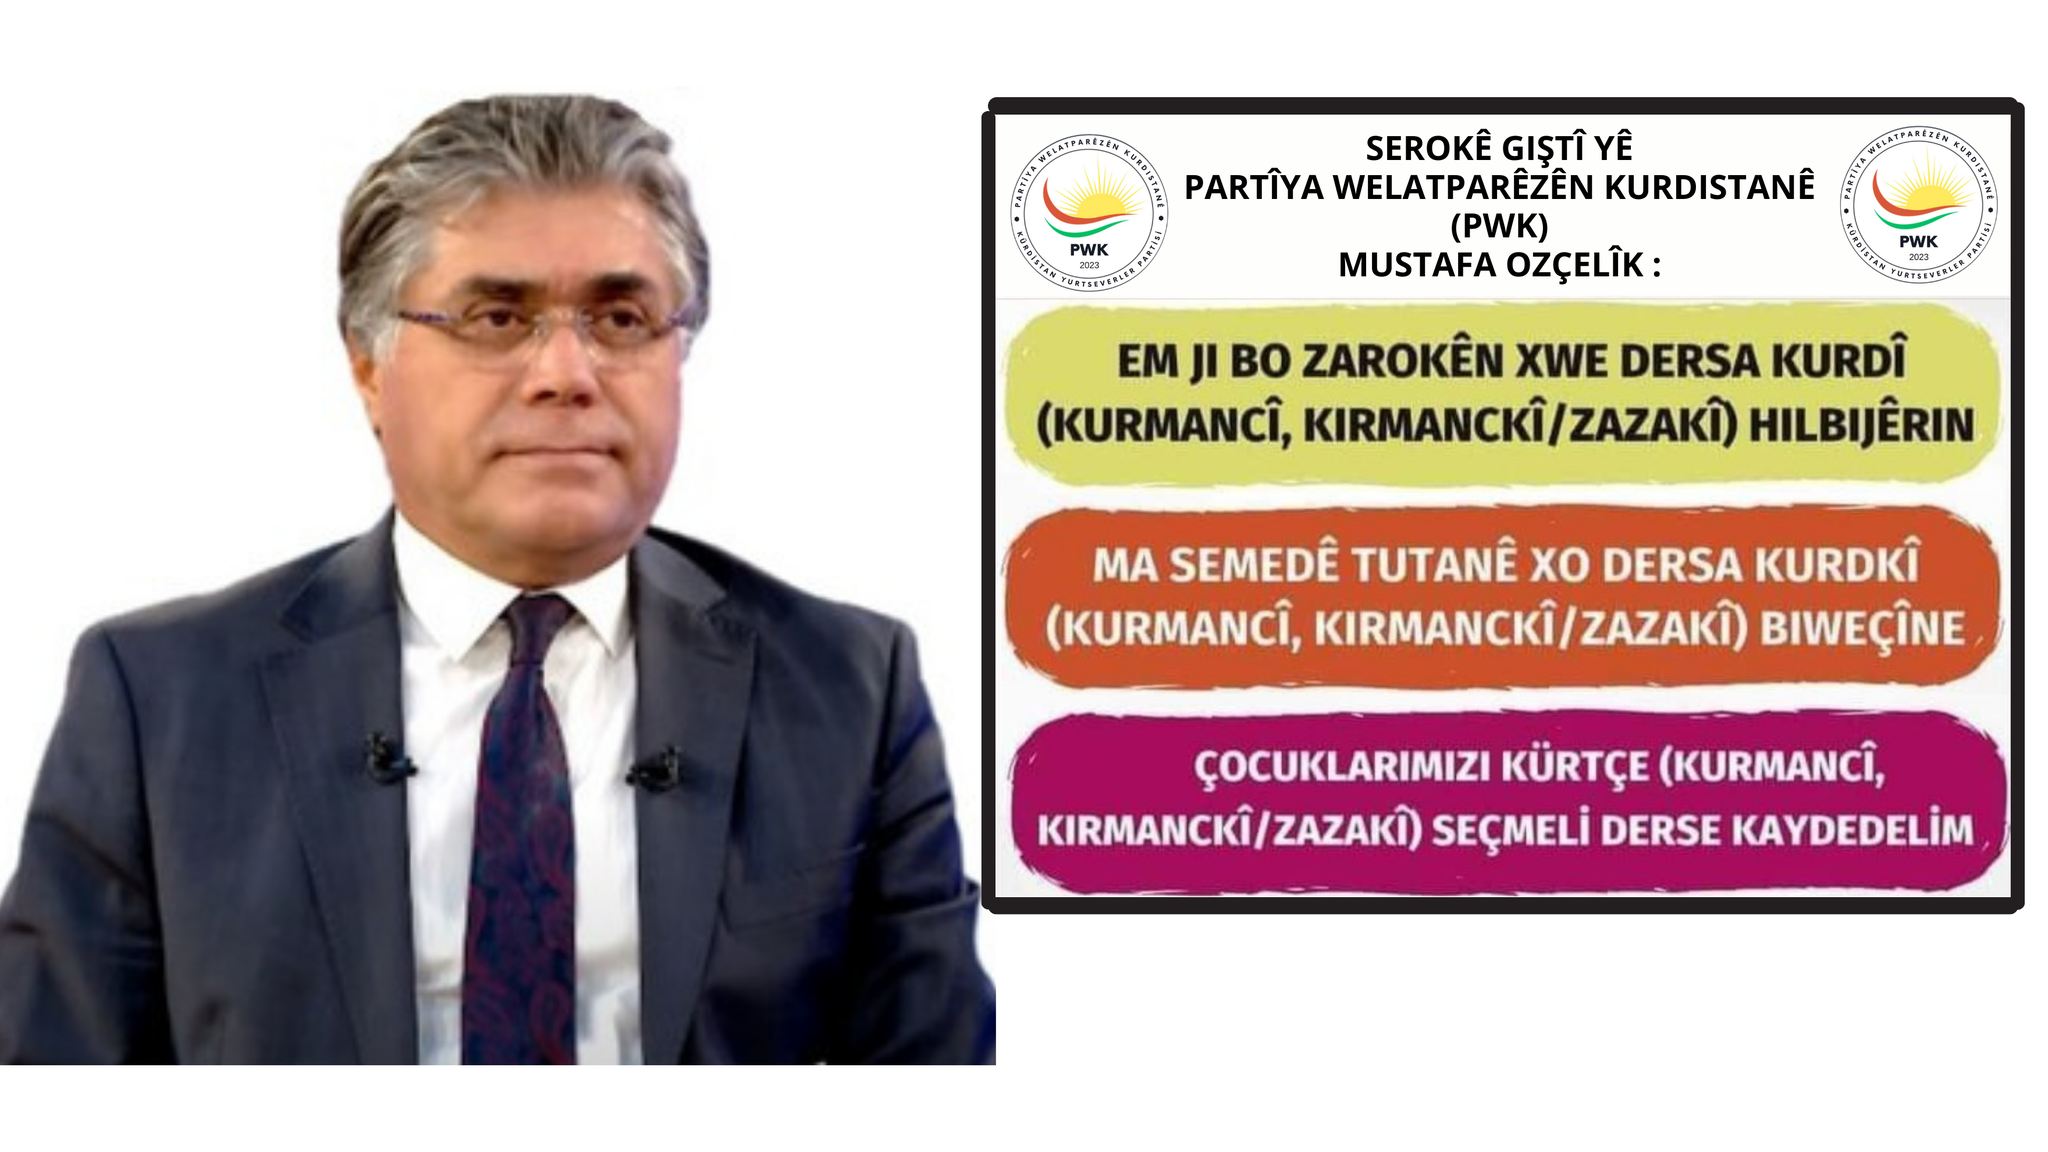 Serekê Pêroyî yê PWKyî Mustafa Ozçelîk: Ganî wextê muracatê dersa weçînite ya kurdî bêro dergkerdiş